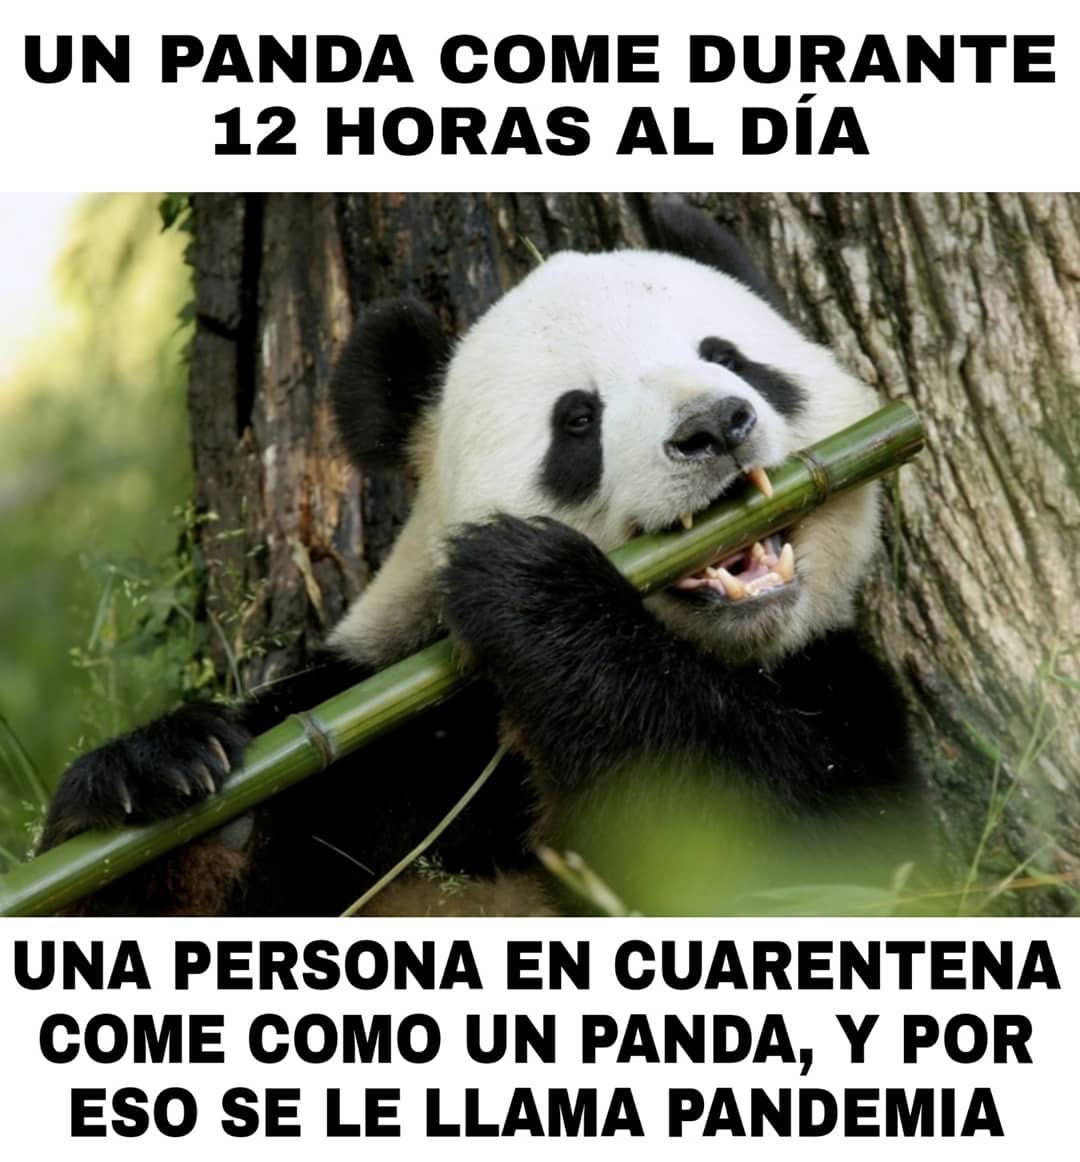 Un panda come durante 12 horas al día una persona en cuarentena come como un panda, y por eso se le llama pandemia.